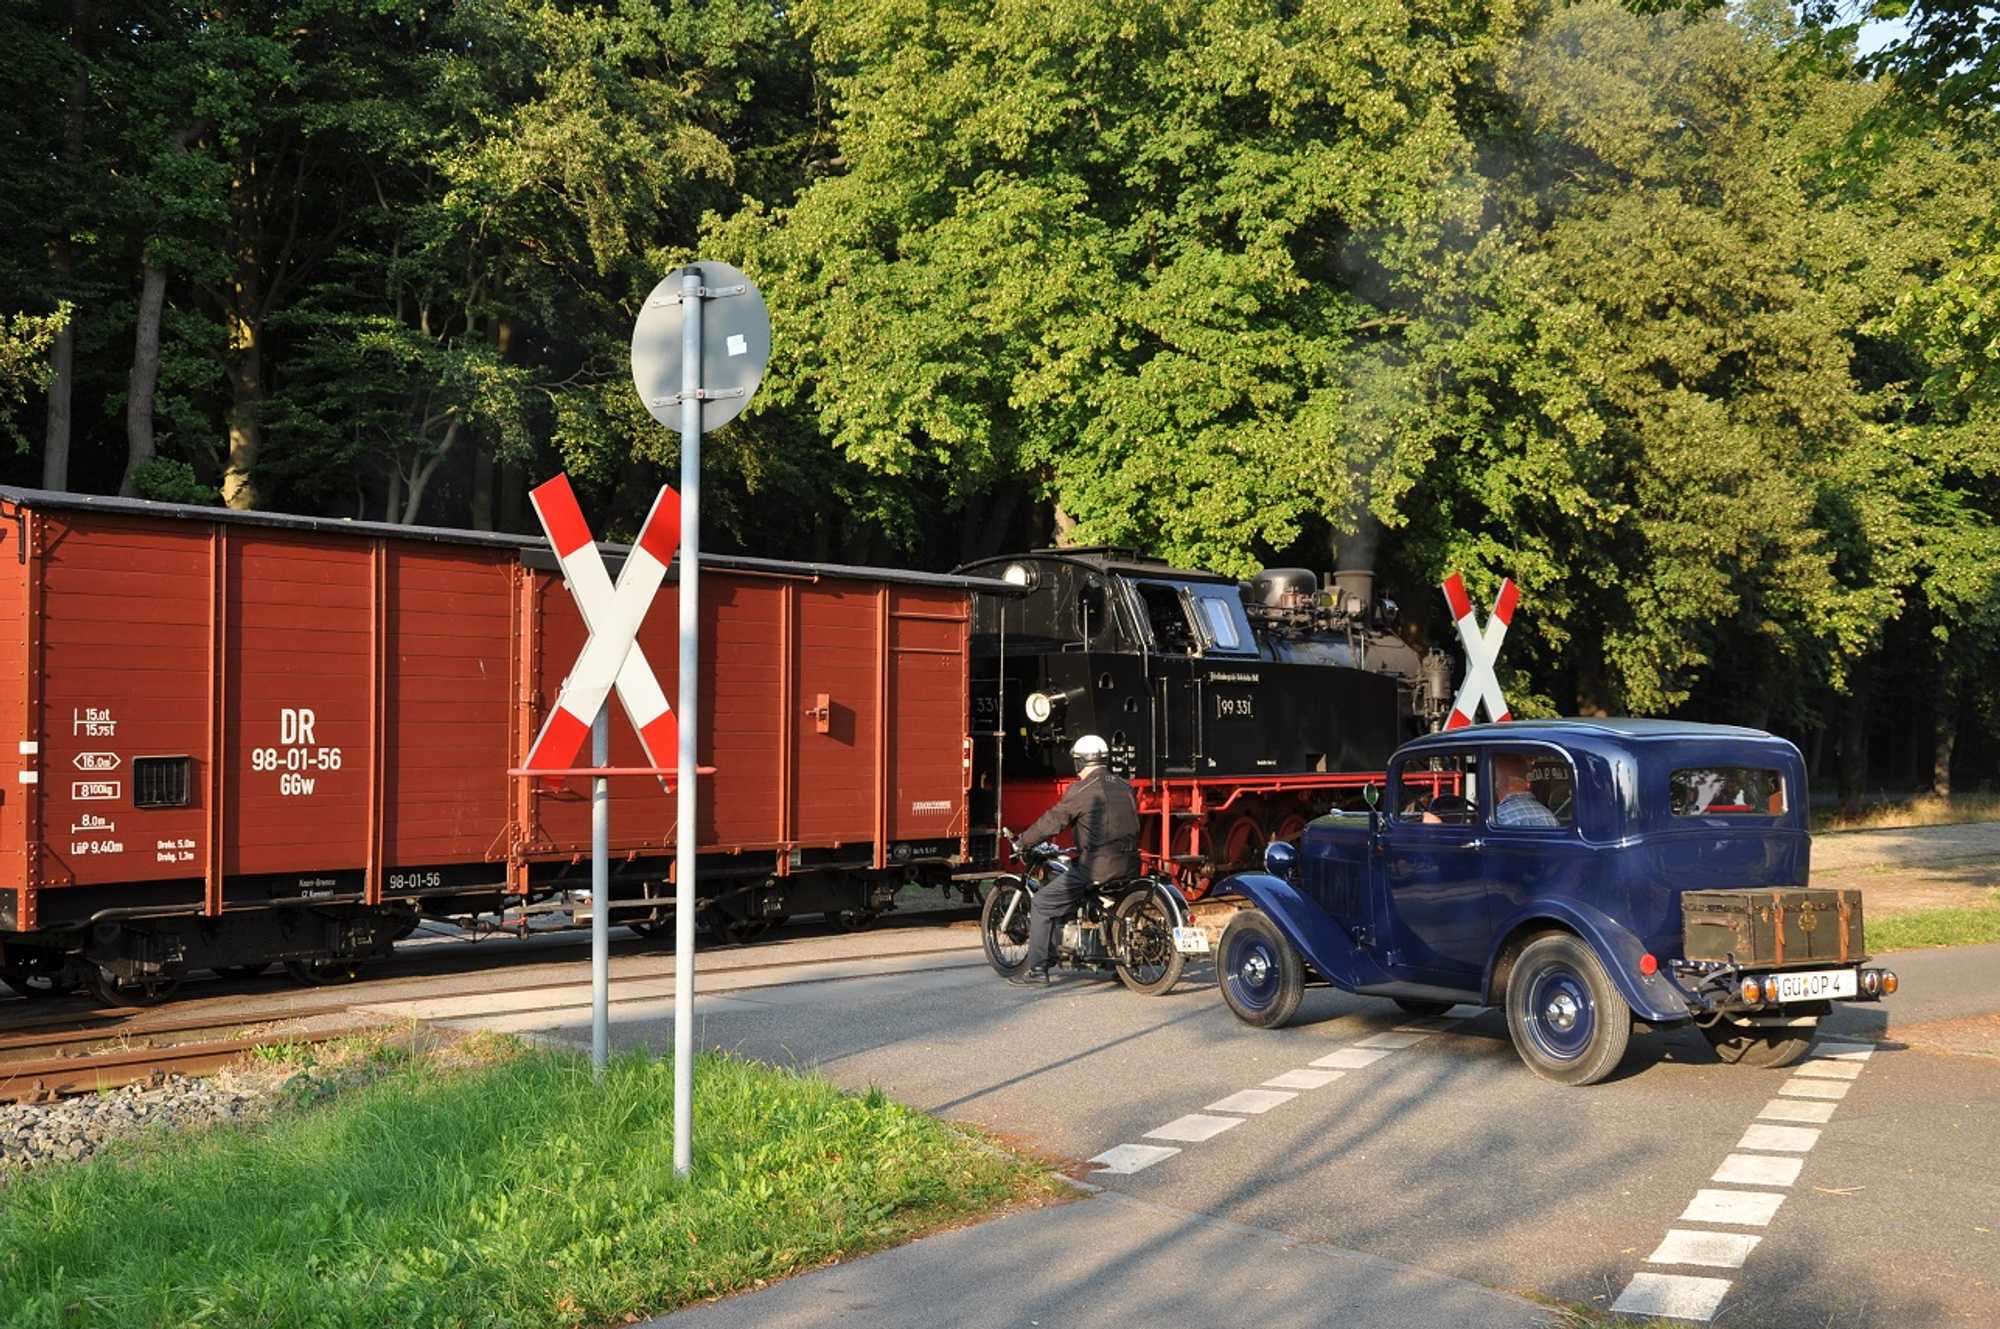 99 331 begegnete im Rahmen der Fotoveranstaltung „Frachtverkehr auf dem Lande“ mit ihrem Gmp-Sonderzug am 26. Juli am Bahnhof Rennbahn diesen zwei- und vierrädrigen Straßenoldtimern.